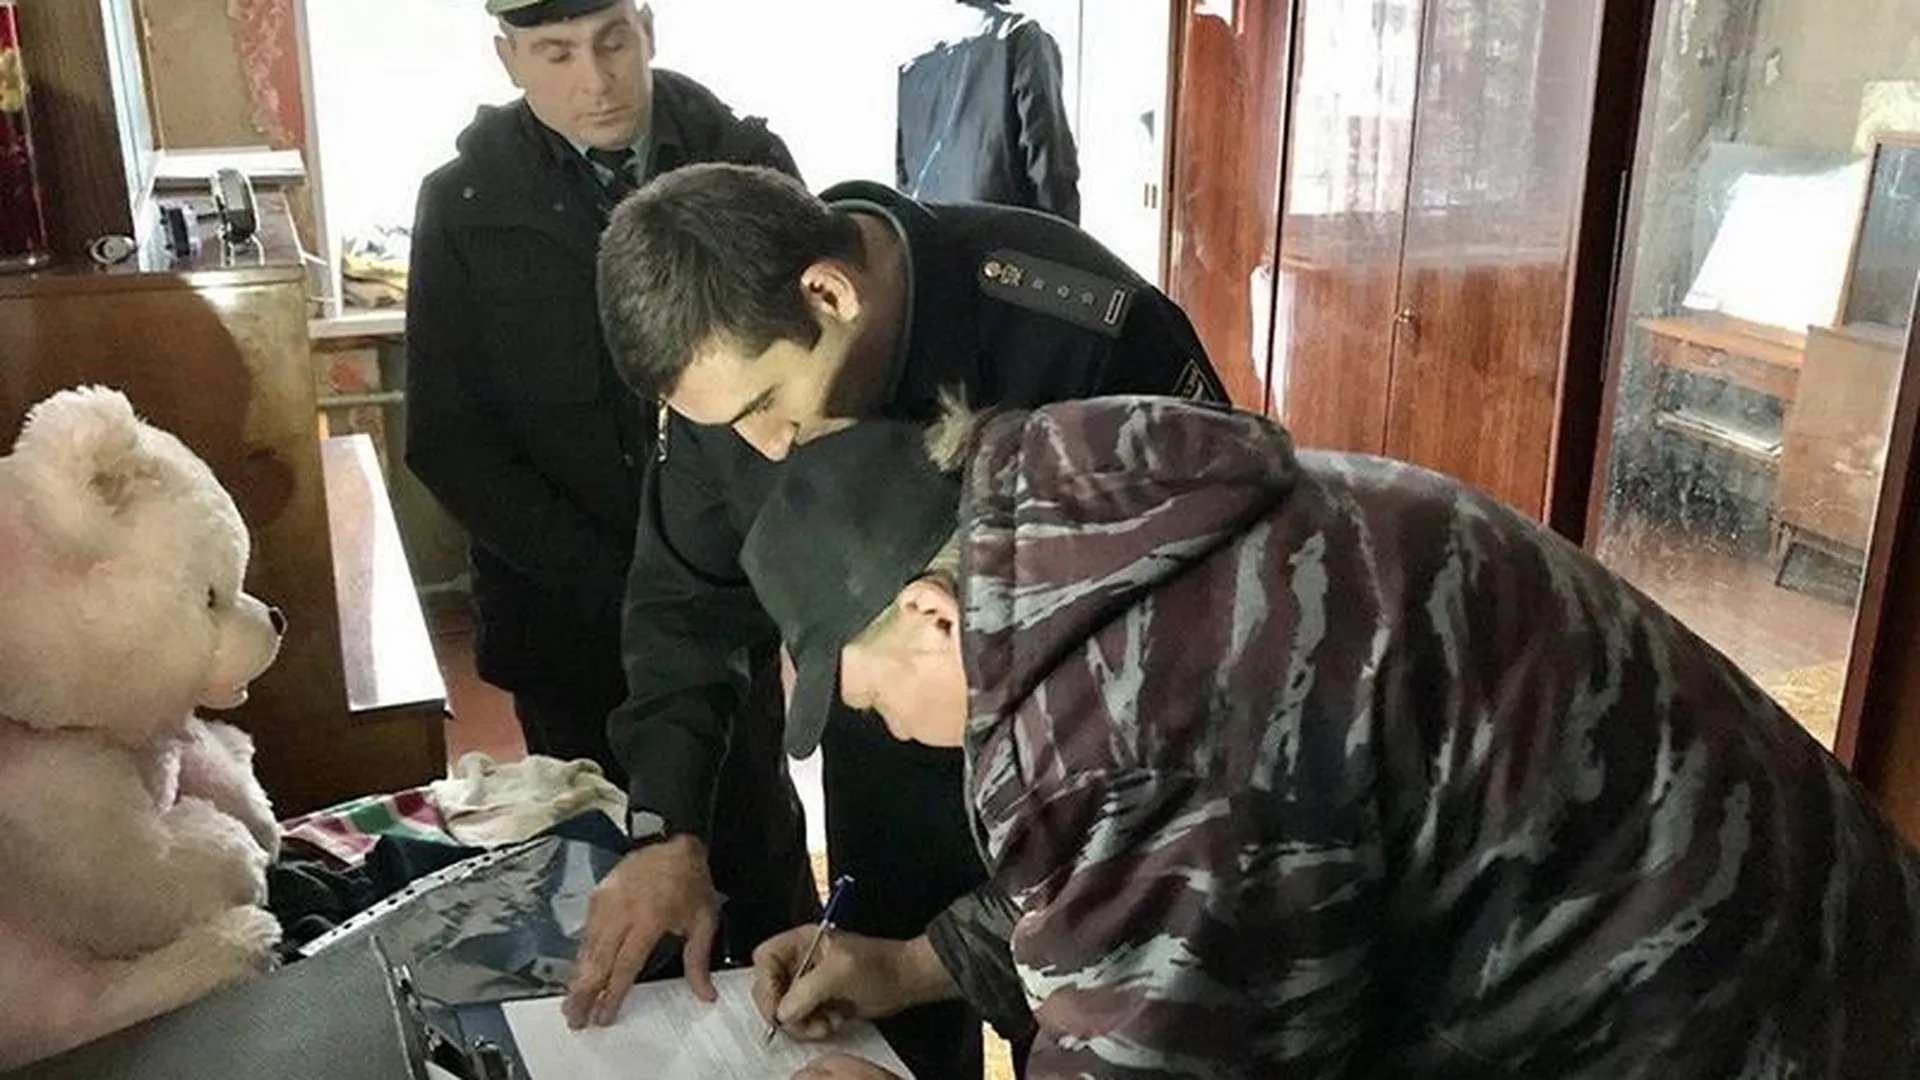 Жителя Нахабино лишили квартиры из-за долга в 500 тыс. руб. за коммунальные услуги